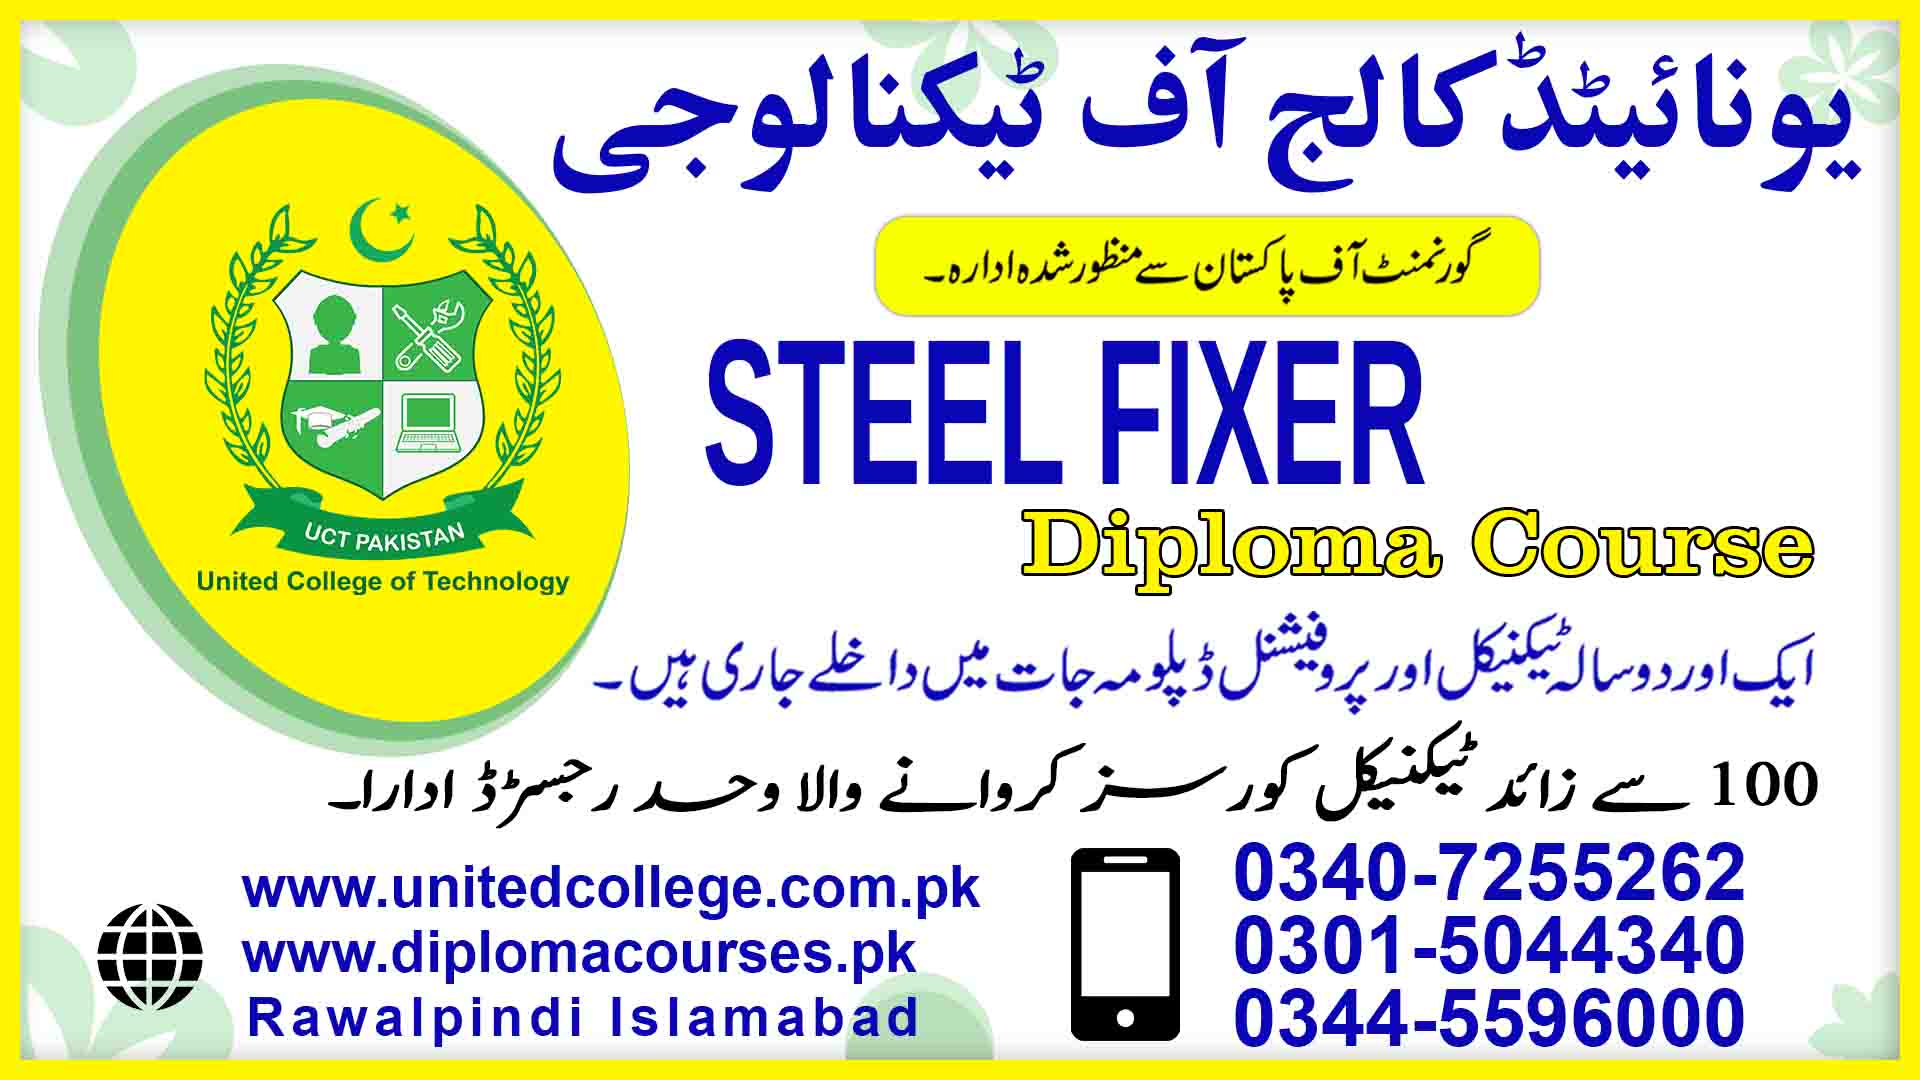 STEEL FIXER COURSE IN RAWALPINDI ISLAMABAD PAKISTAN